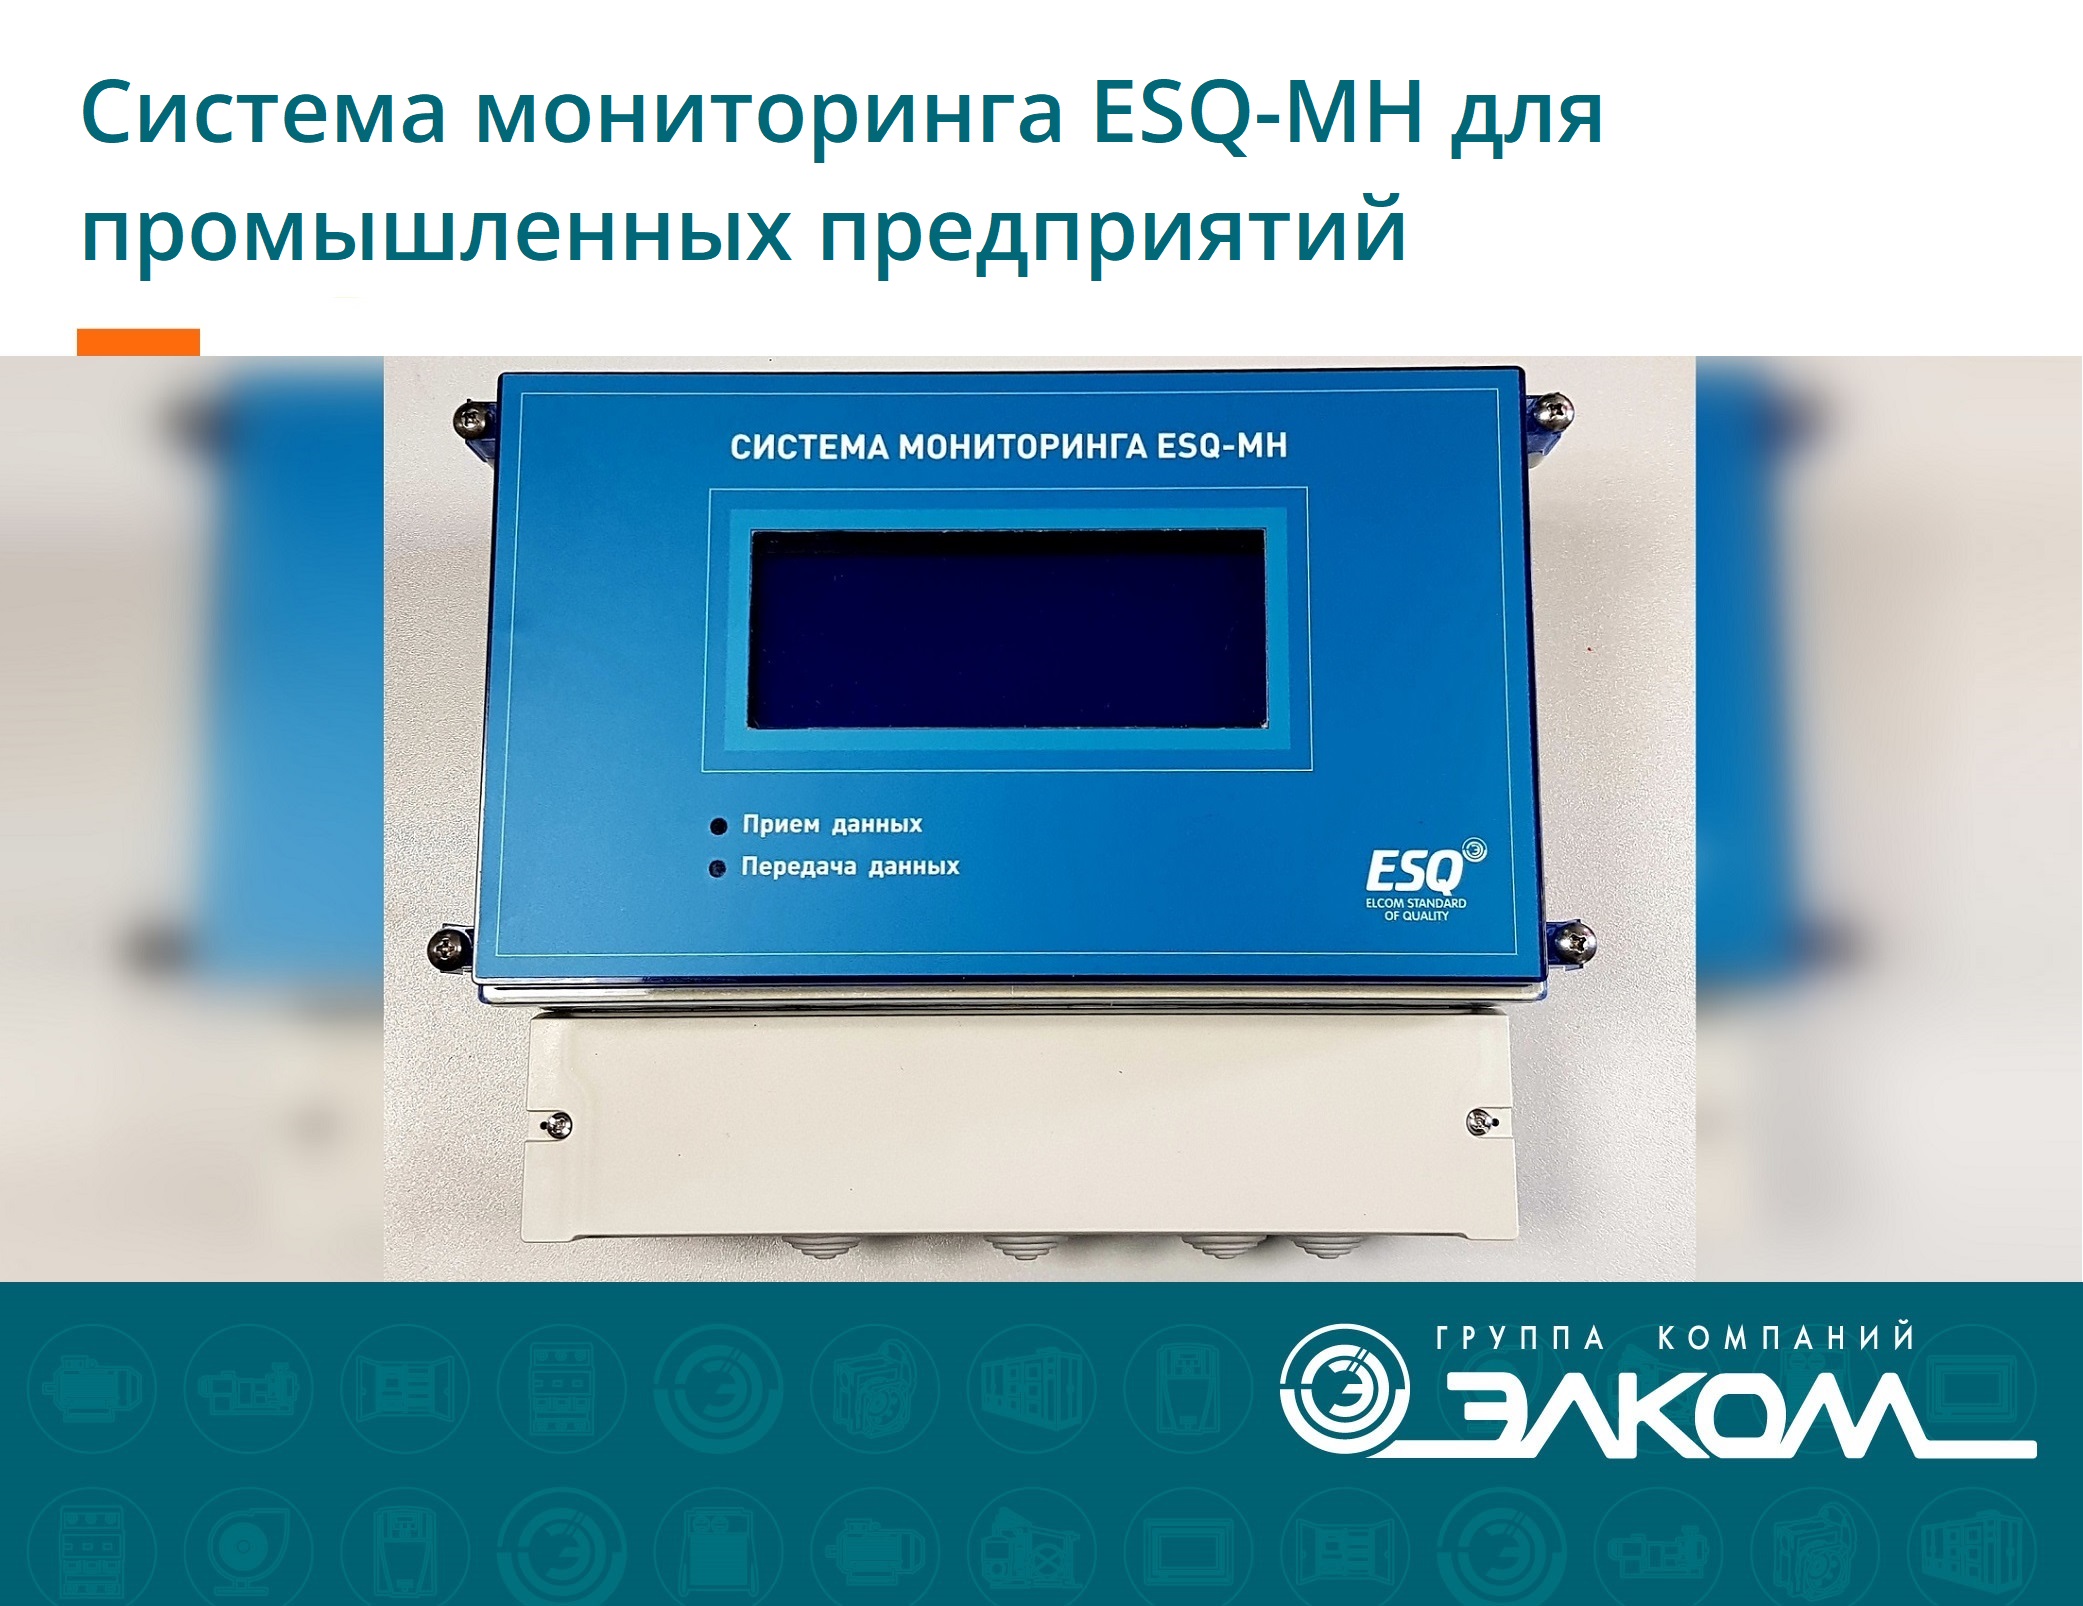 Система мониторинга ESQ-MH для промышленных предприятий